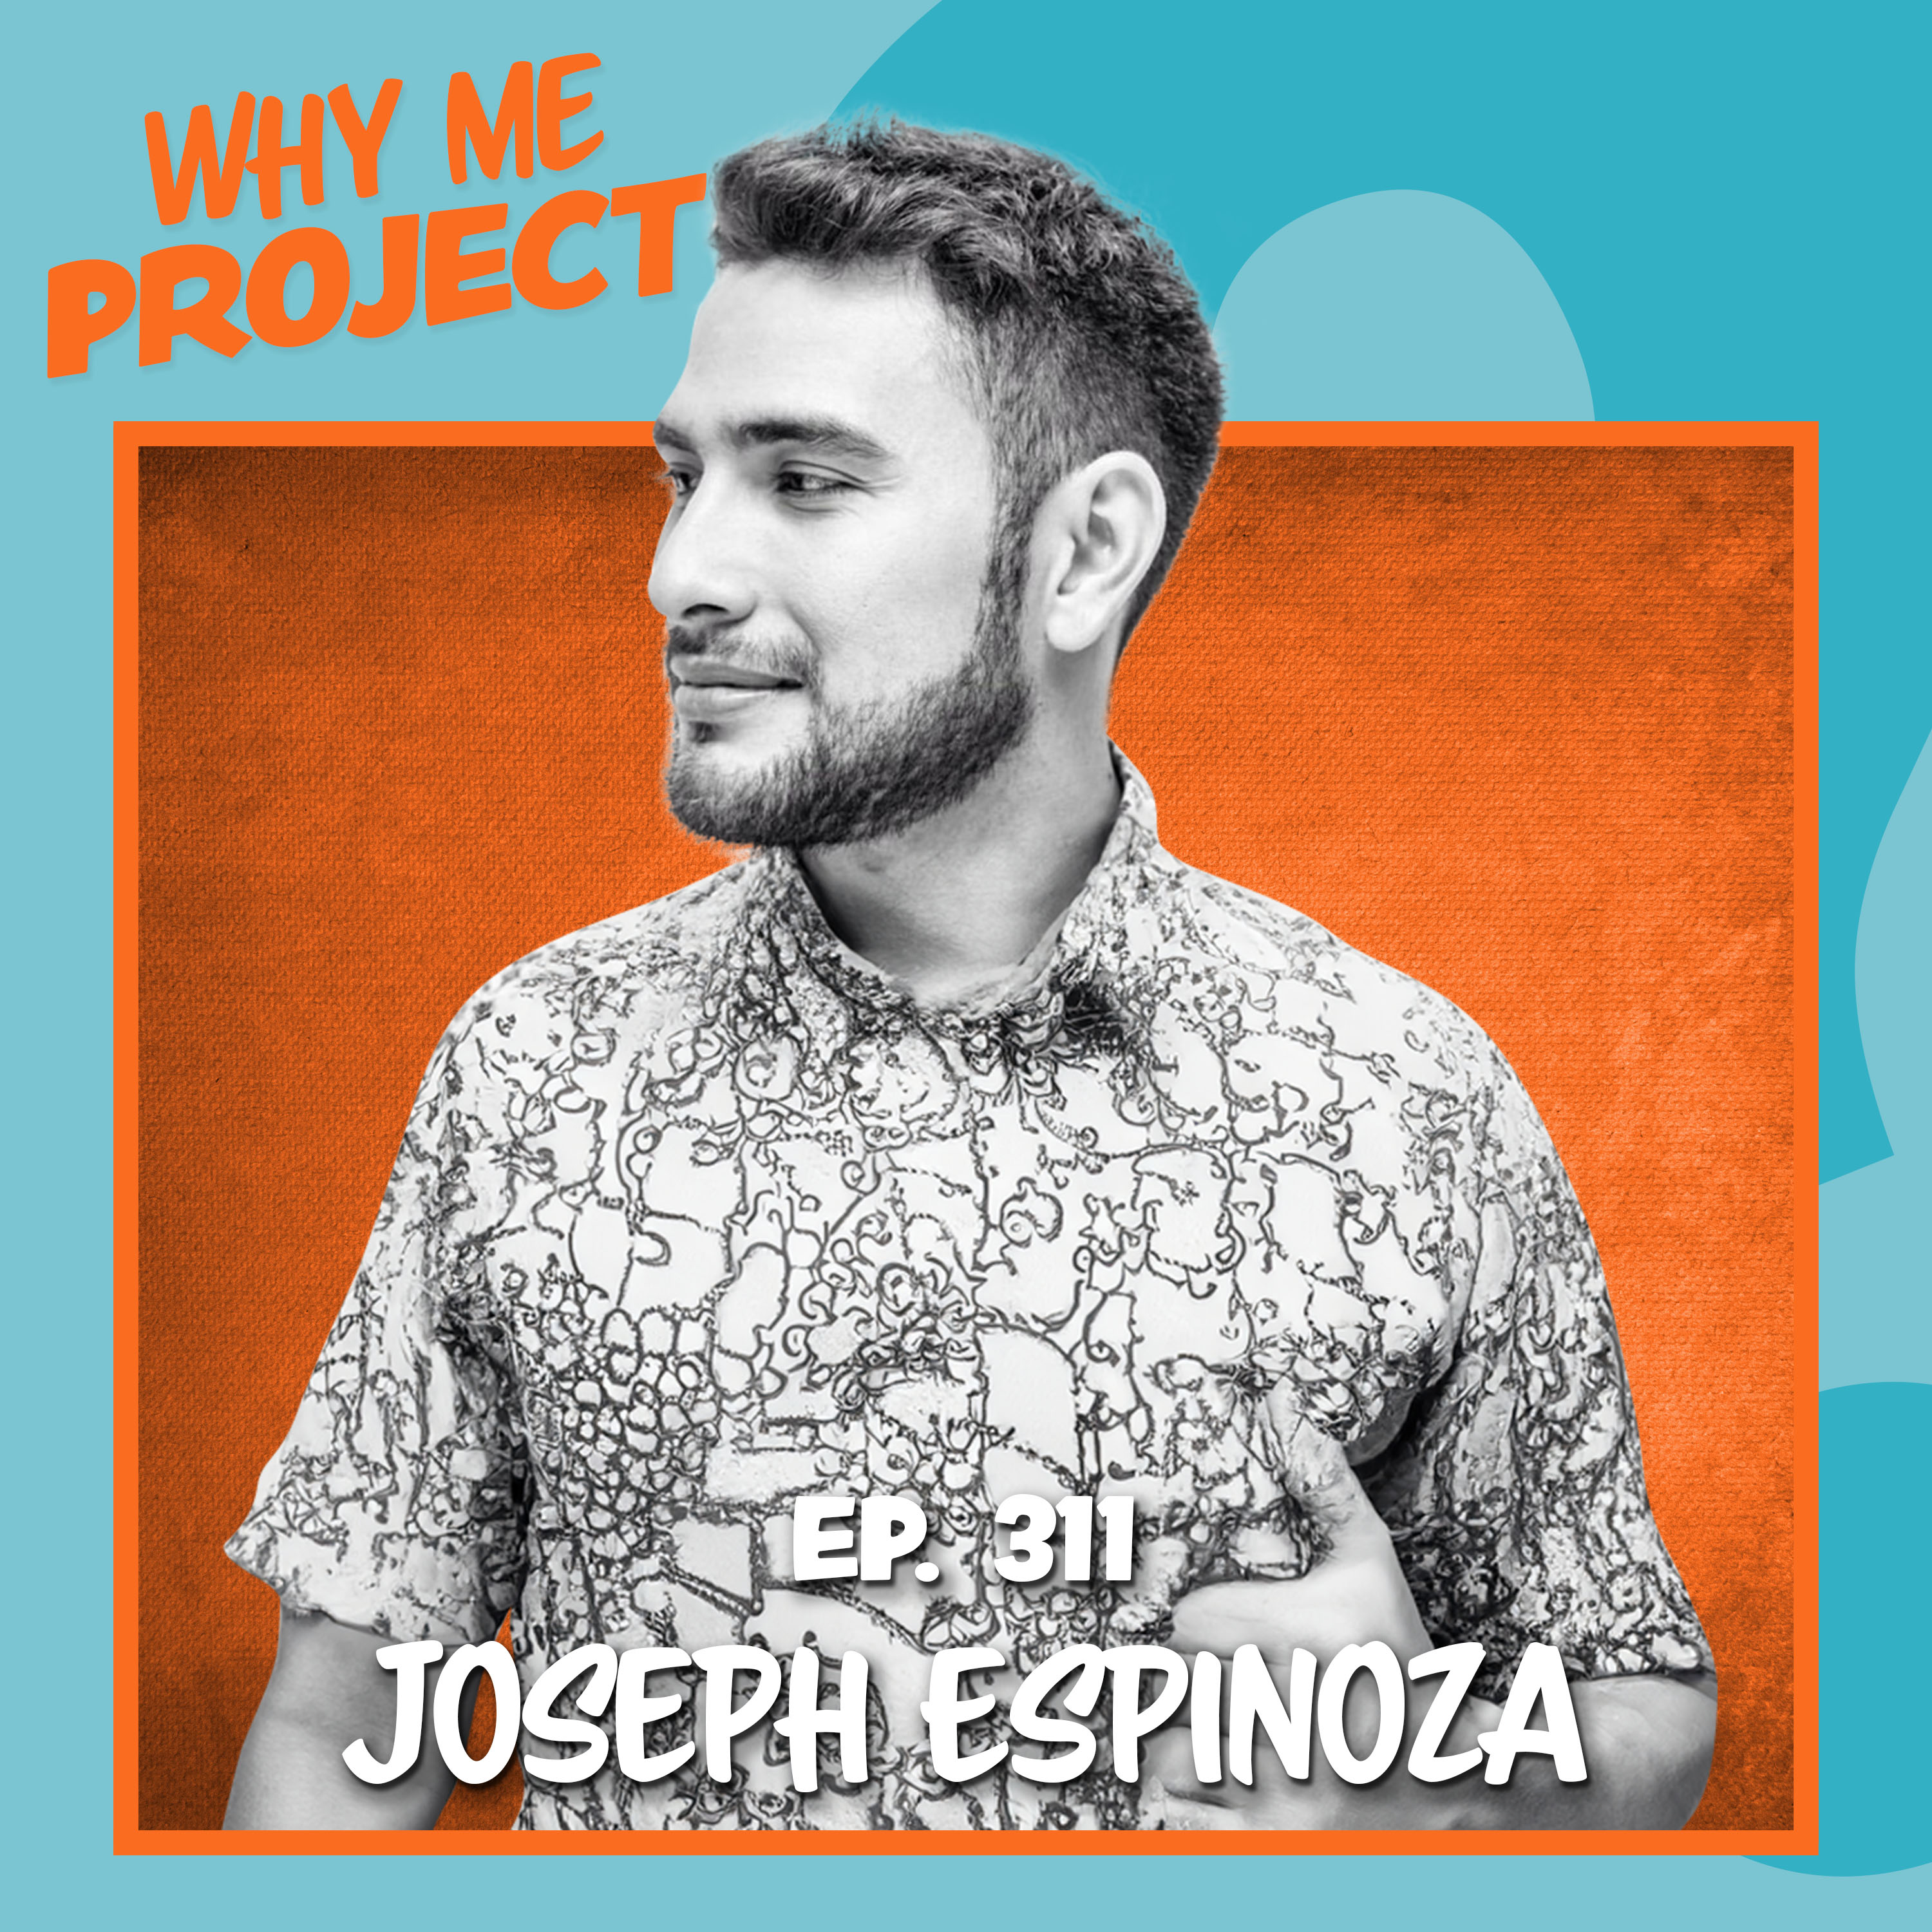 Joseph Espinoza